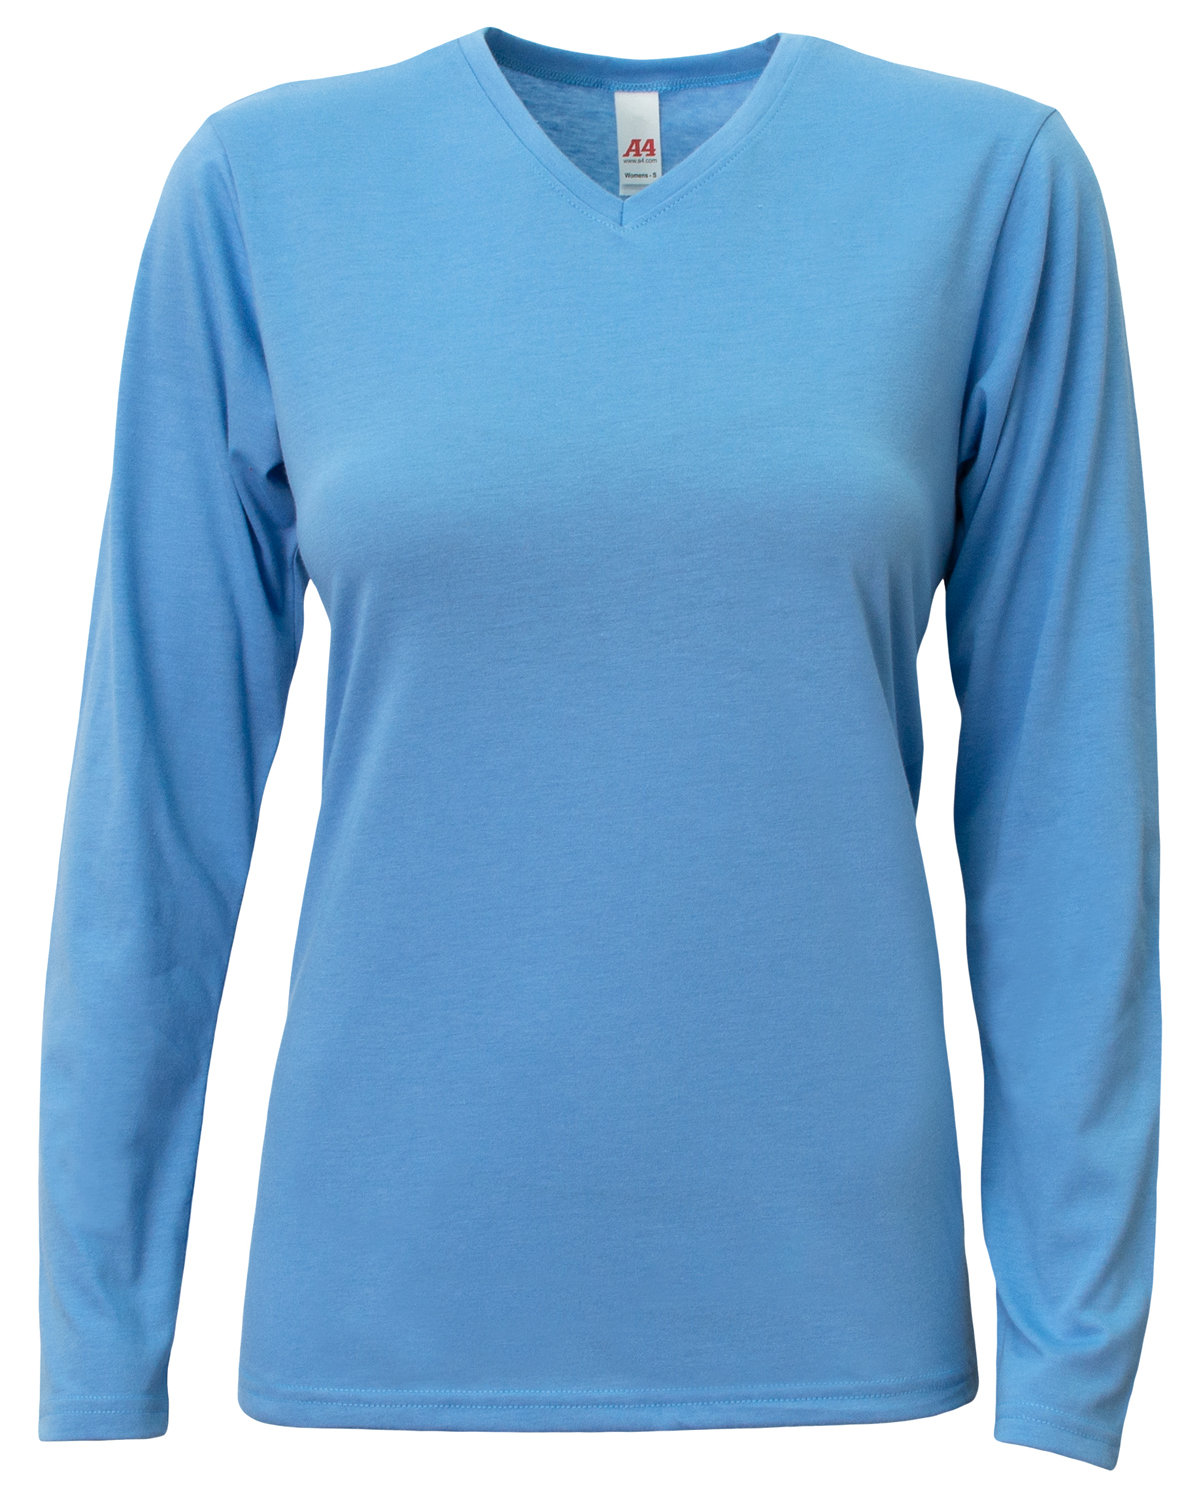 A4 Ladies' Long-Sleeve Softek V-Neck T-Shirt | alphabroder